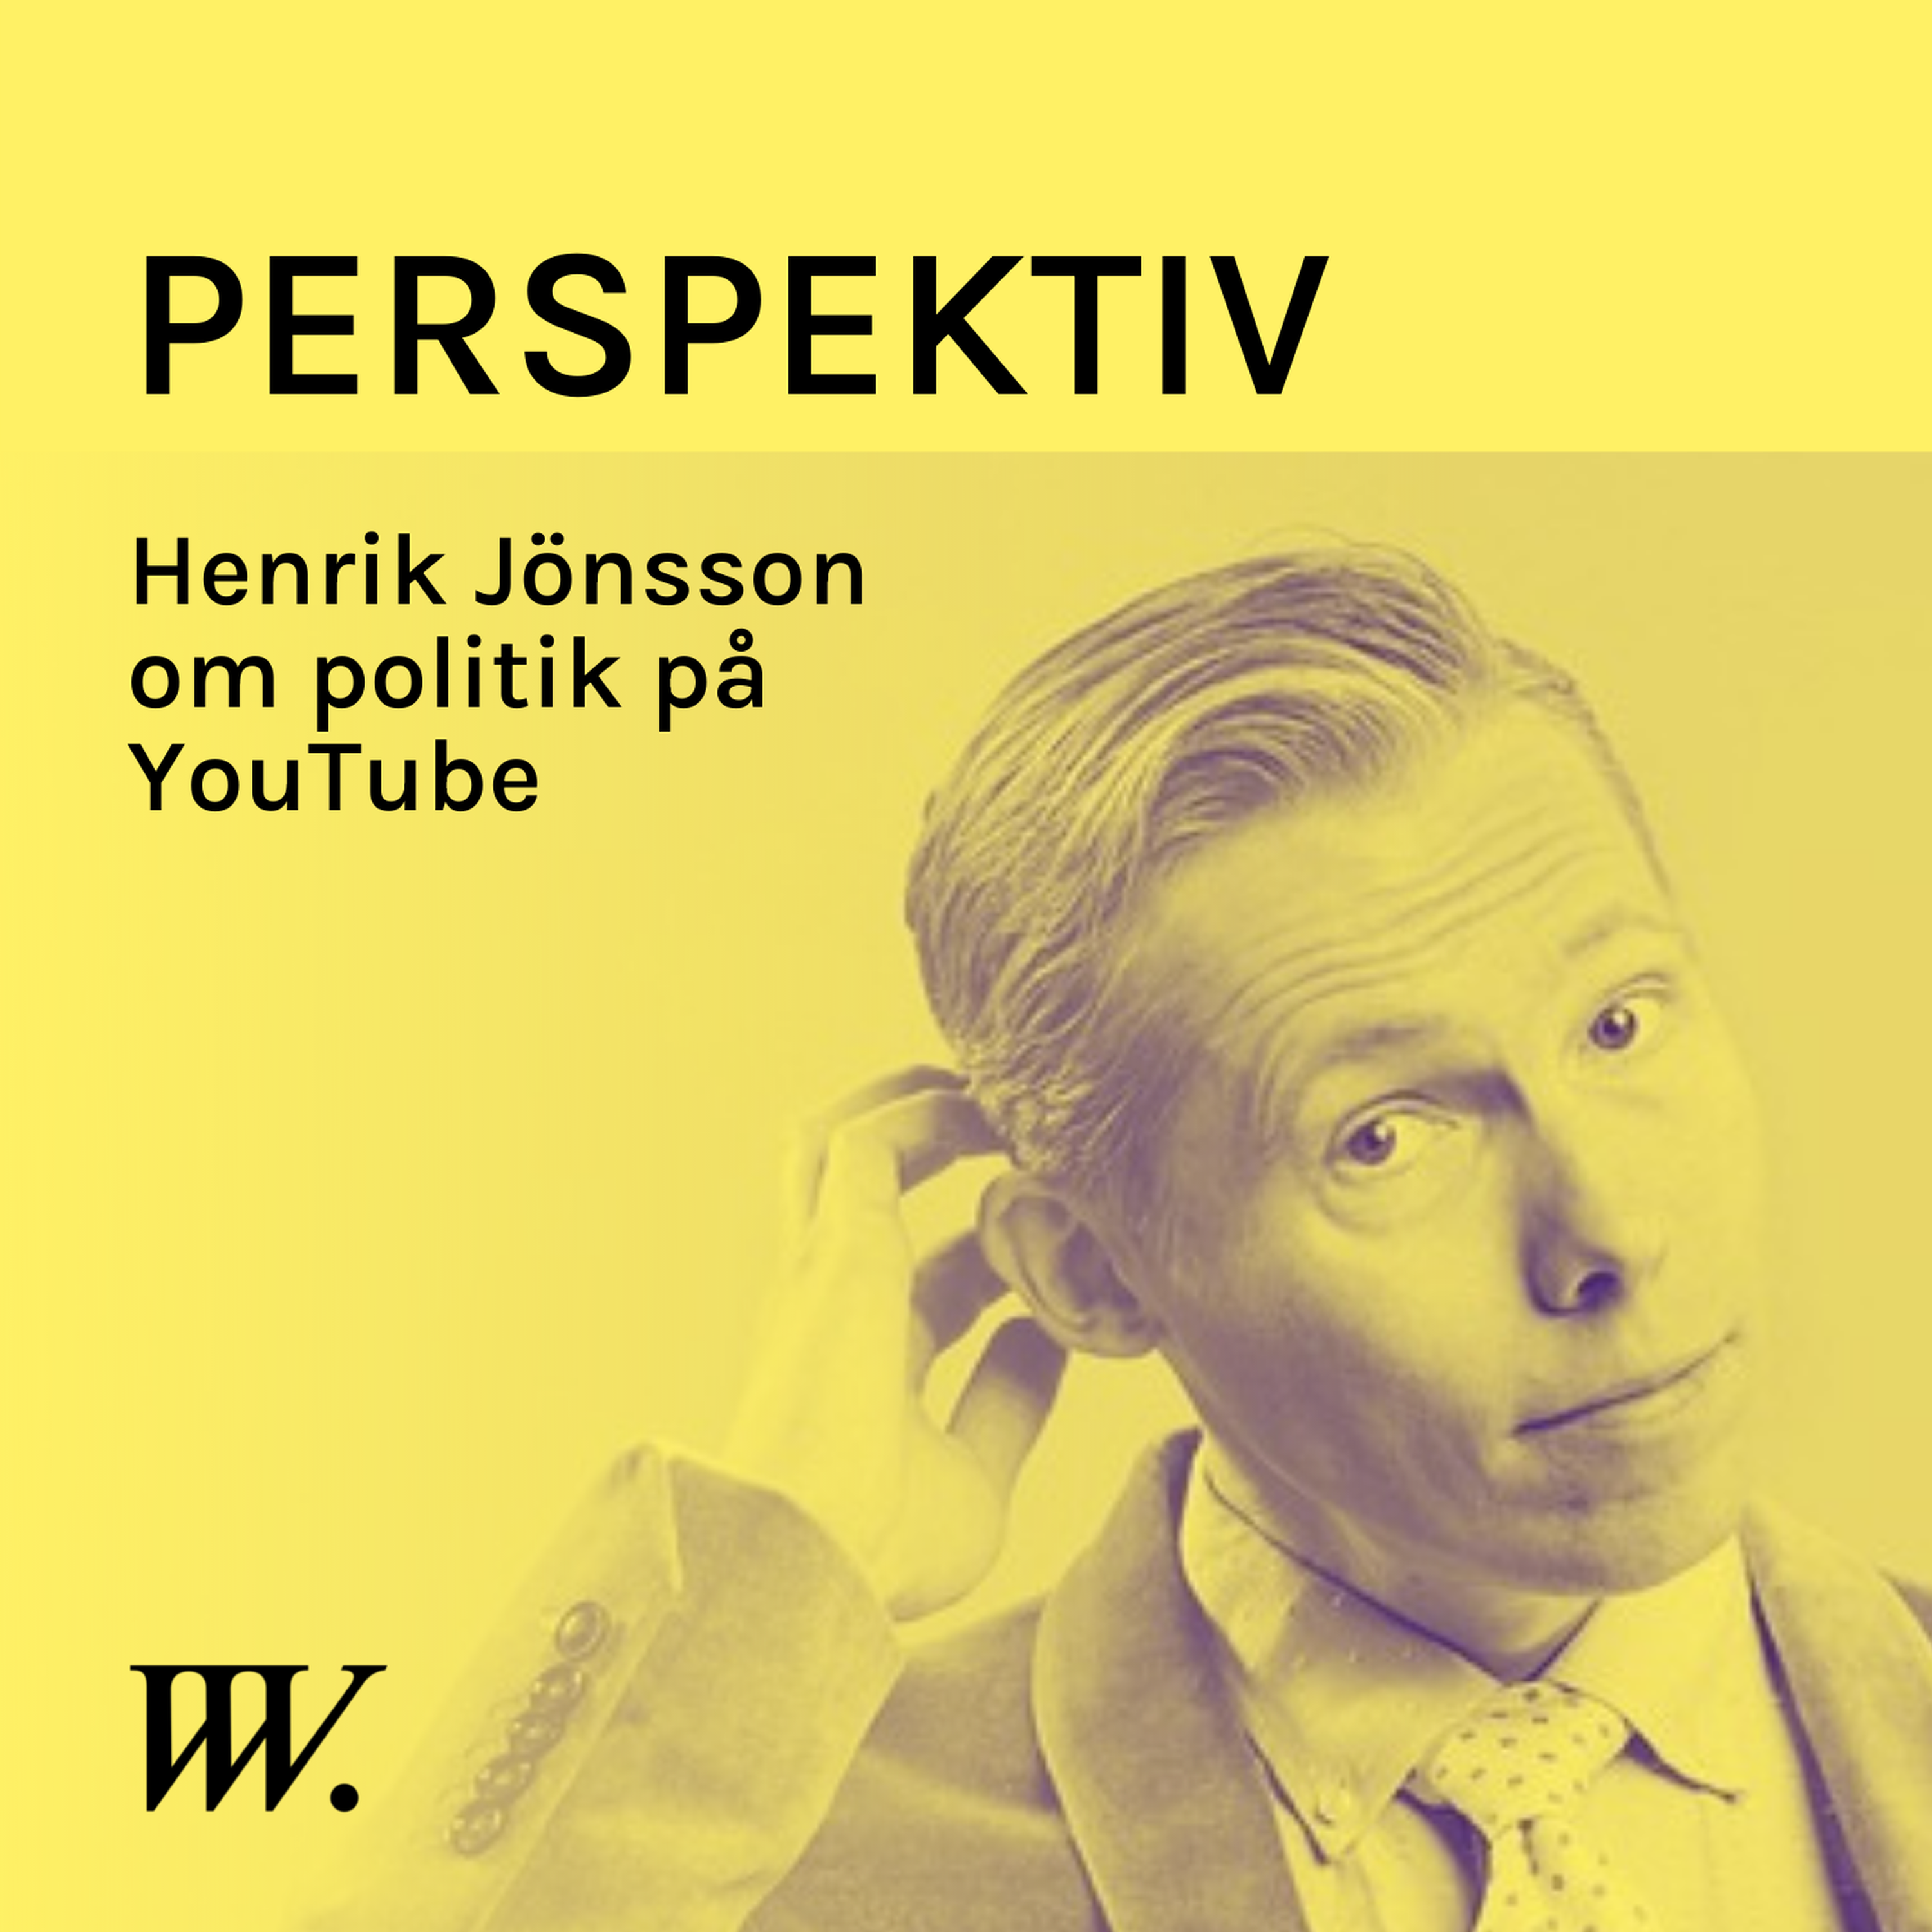 78. YouTubes ökade betydelse i politiken - med Henrik Jönsson